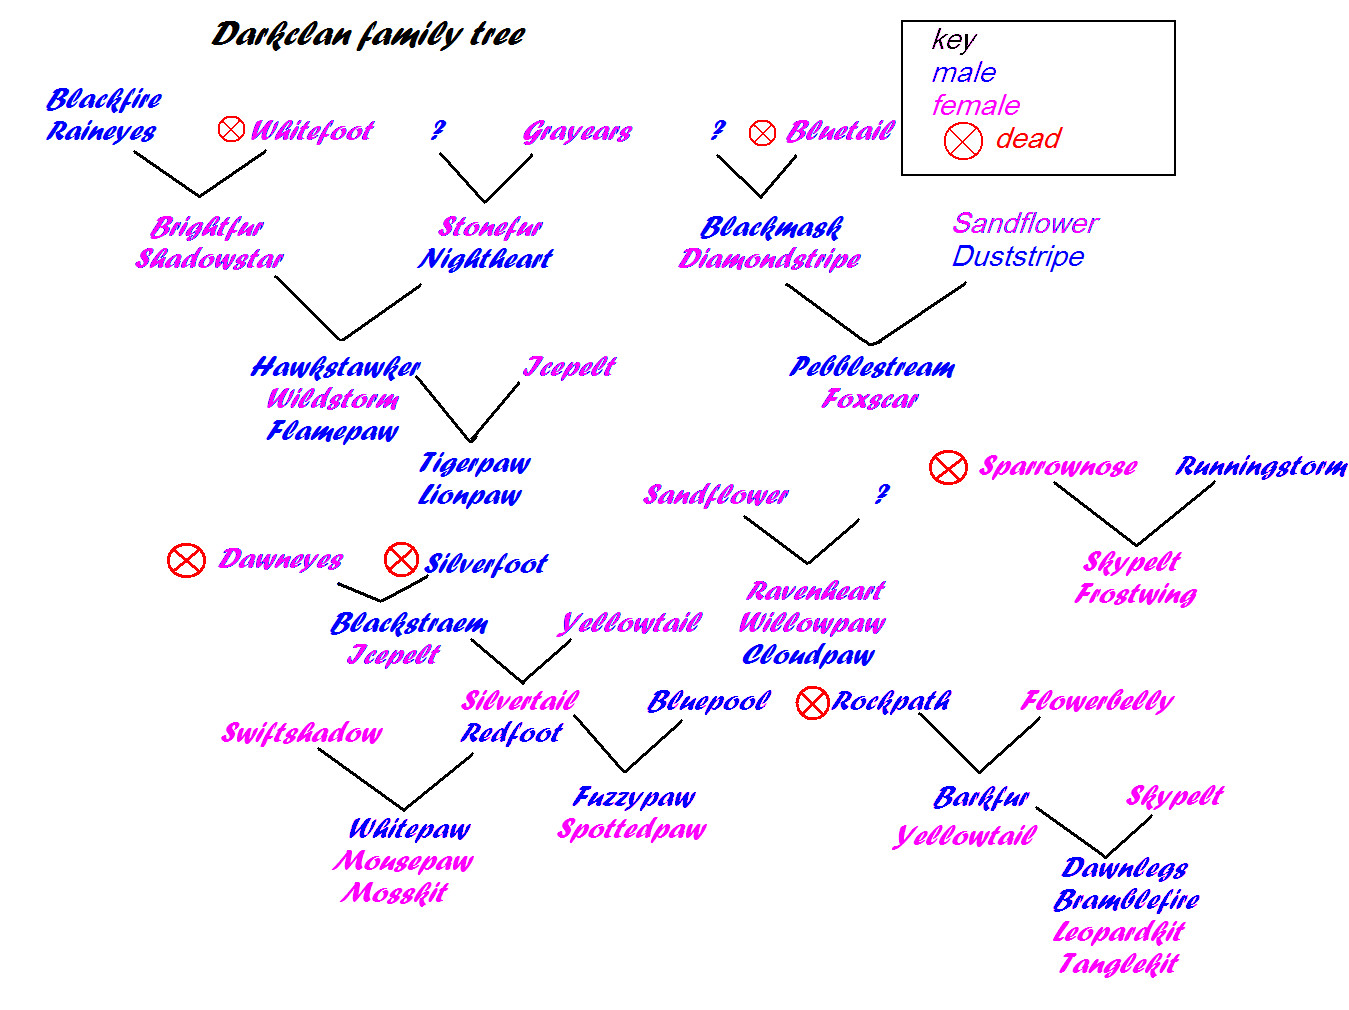 darkclan family tree by Wishsayer